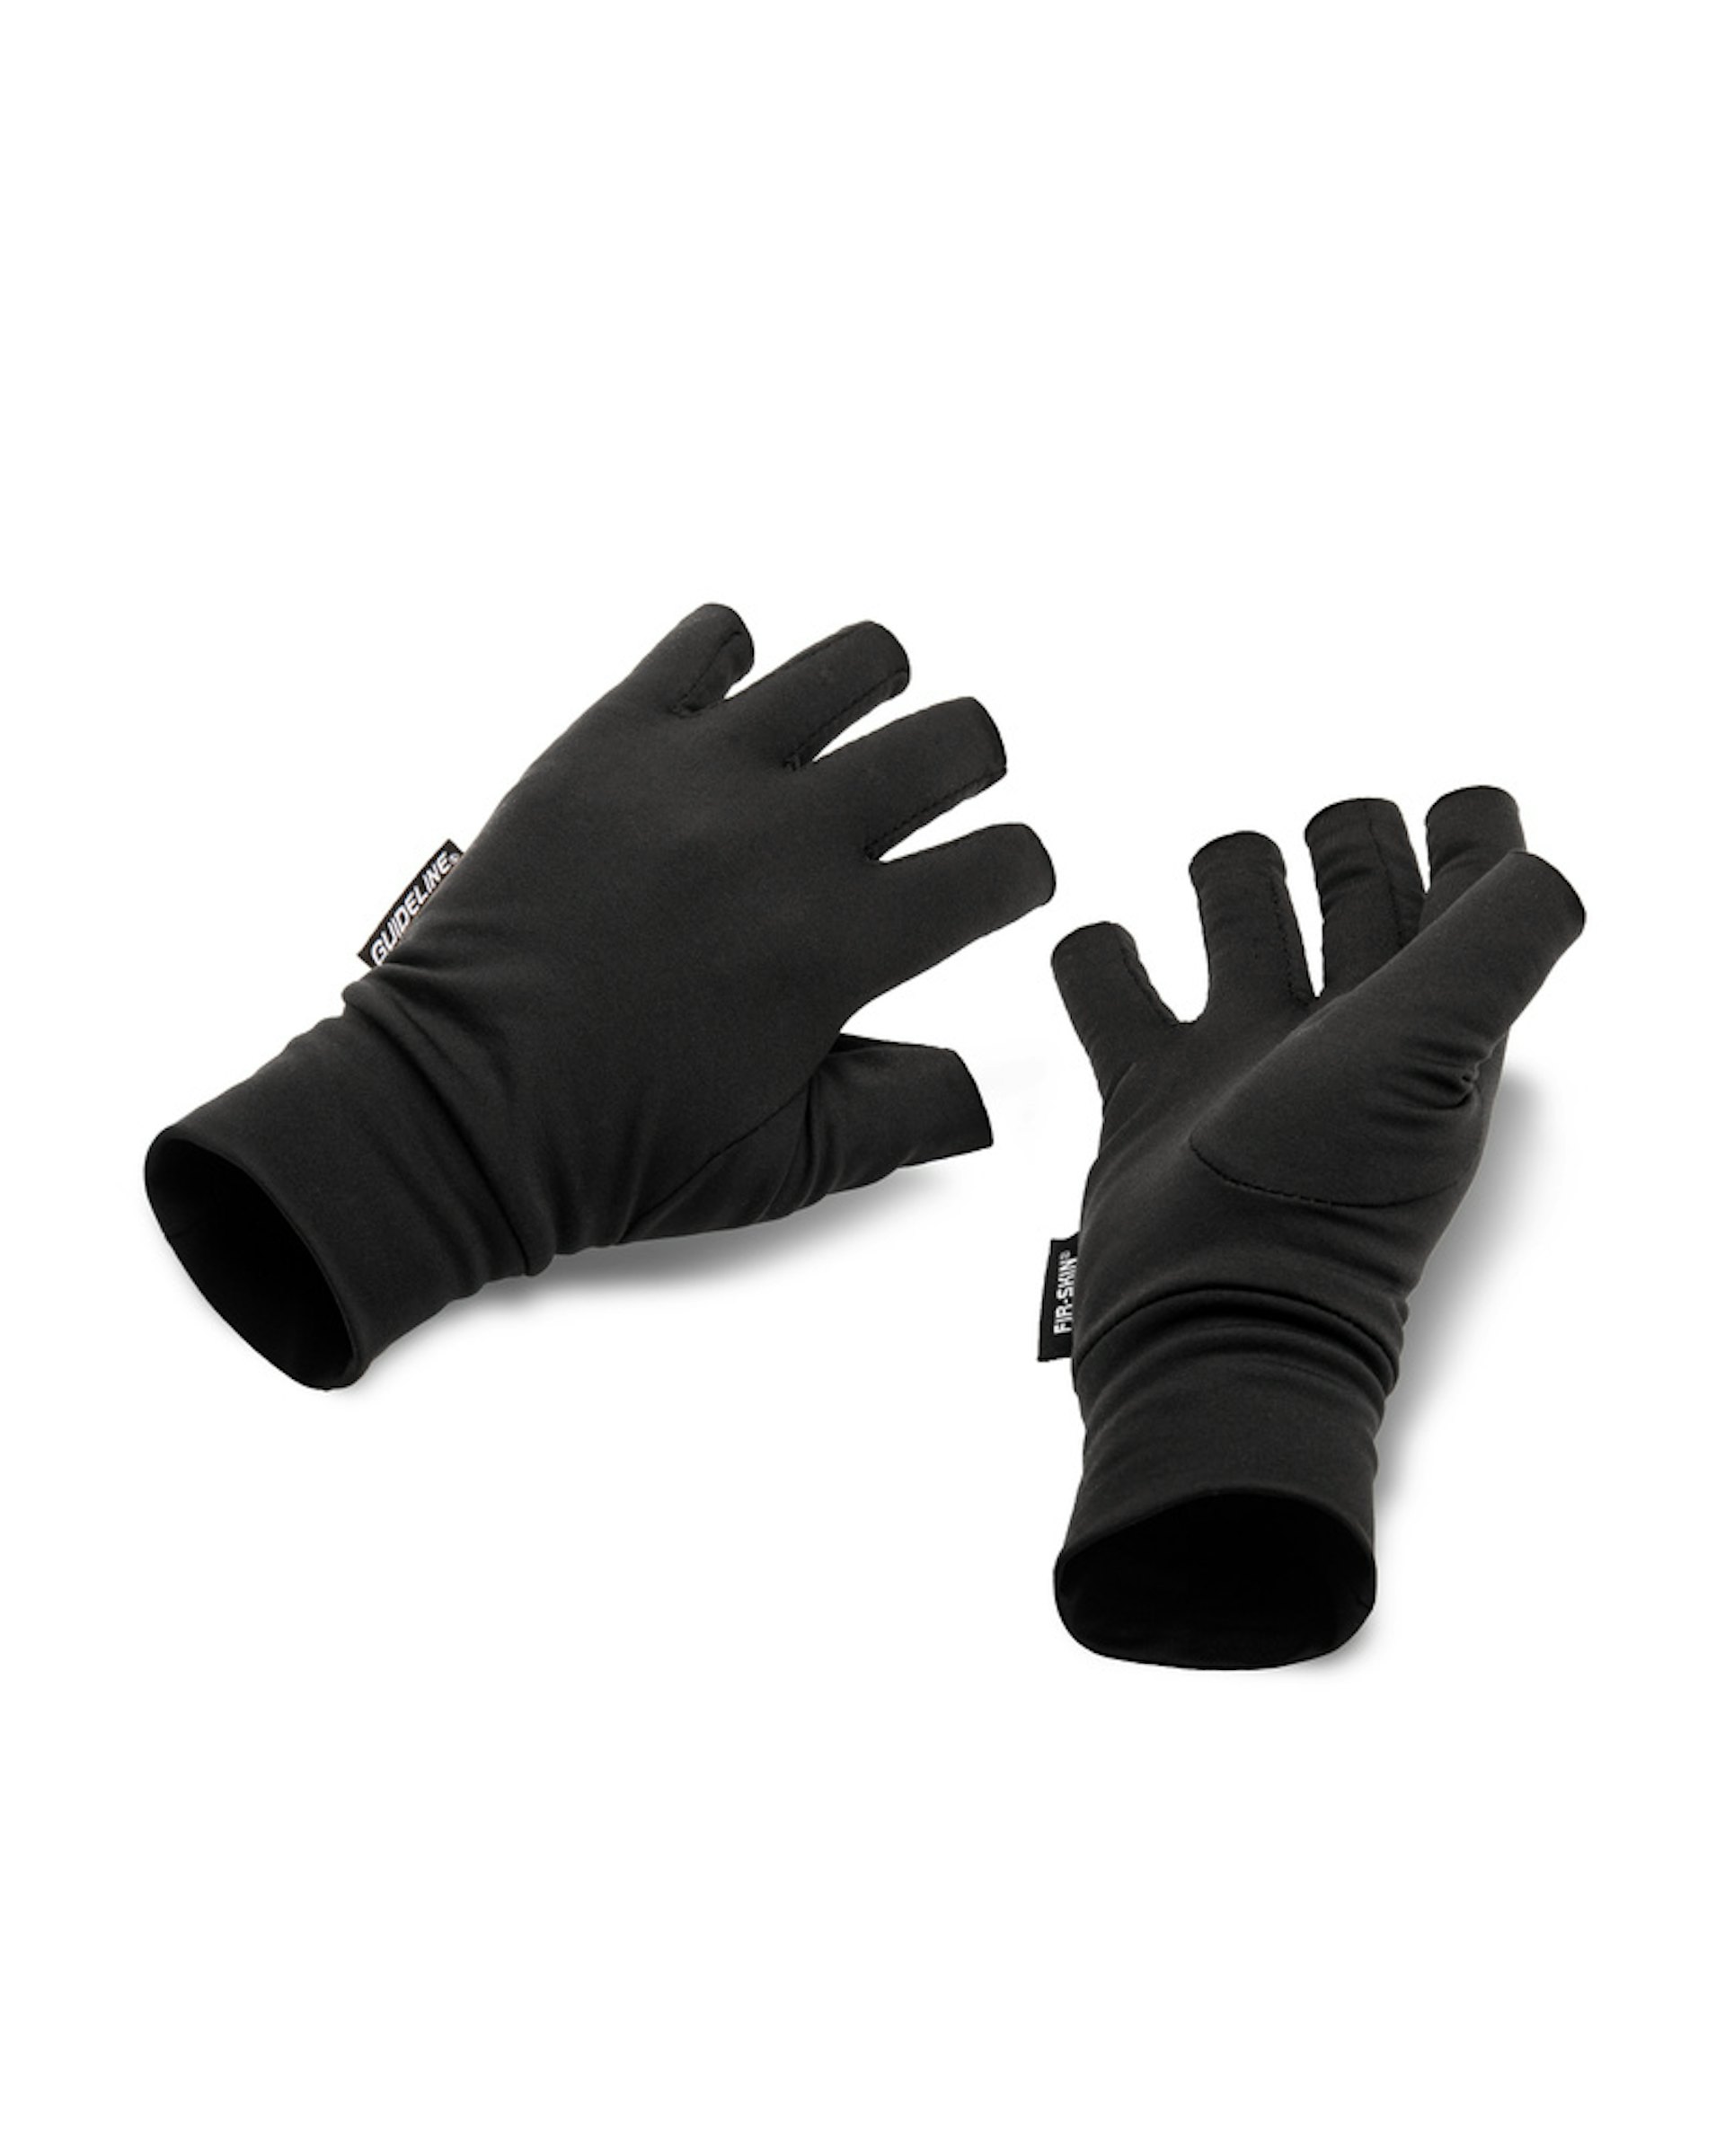 FIR-SKIN Fingerless Gloves XXL (bild 1 av 1)